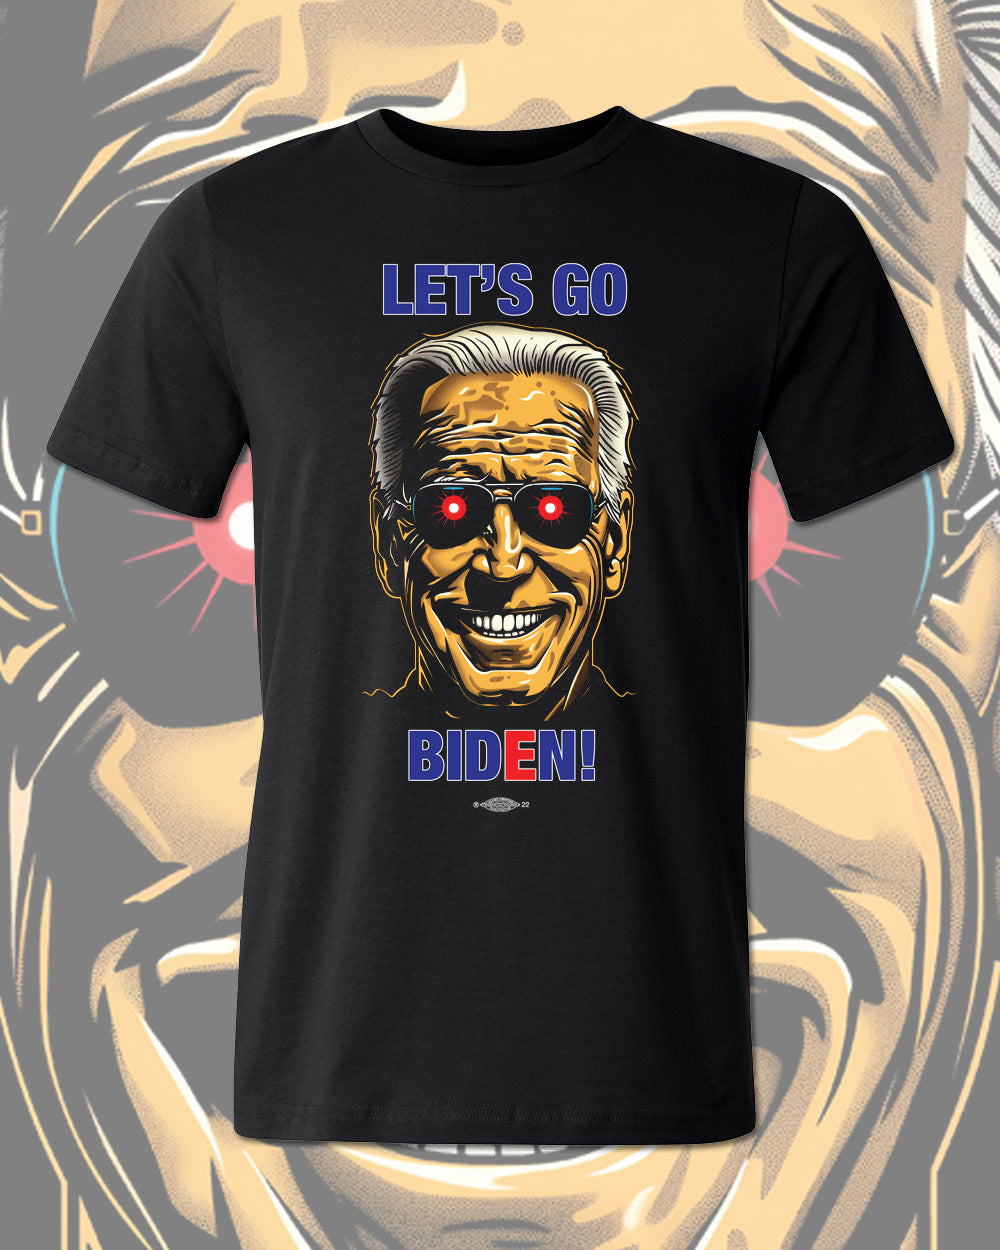 Let's Go Biden! Darkest Brandon unisex tee shirt